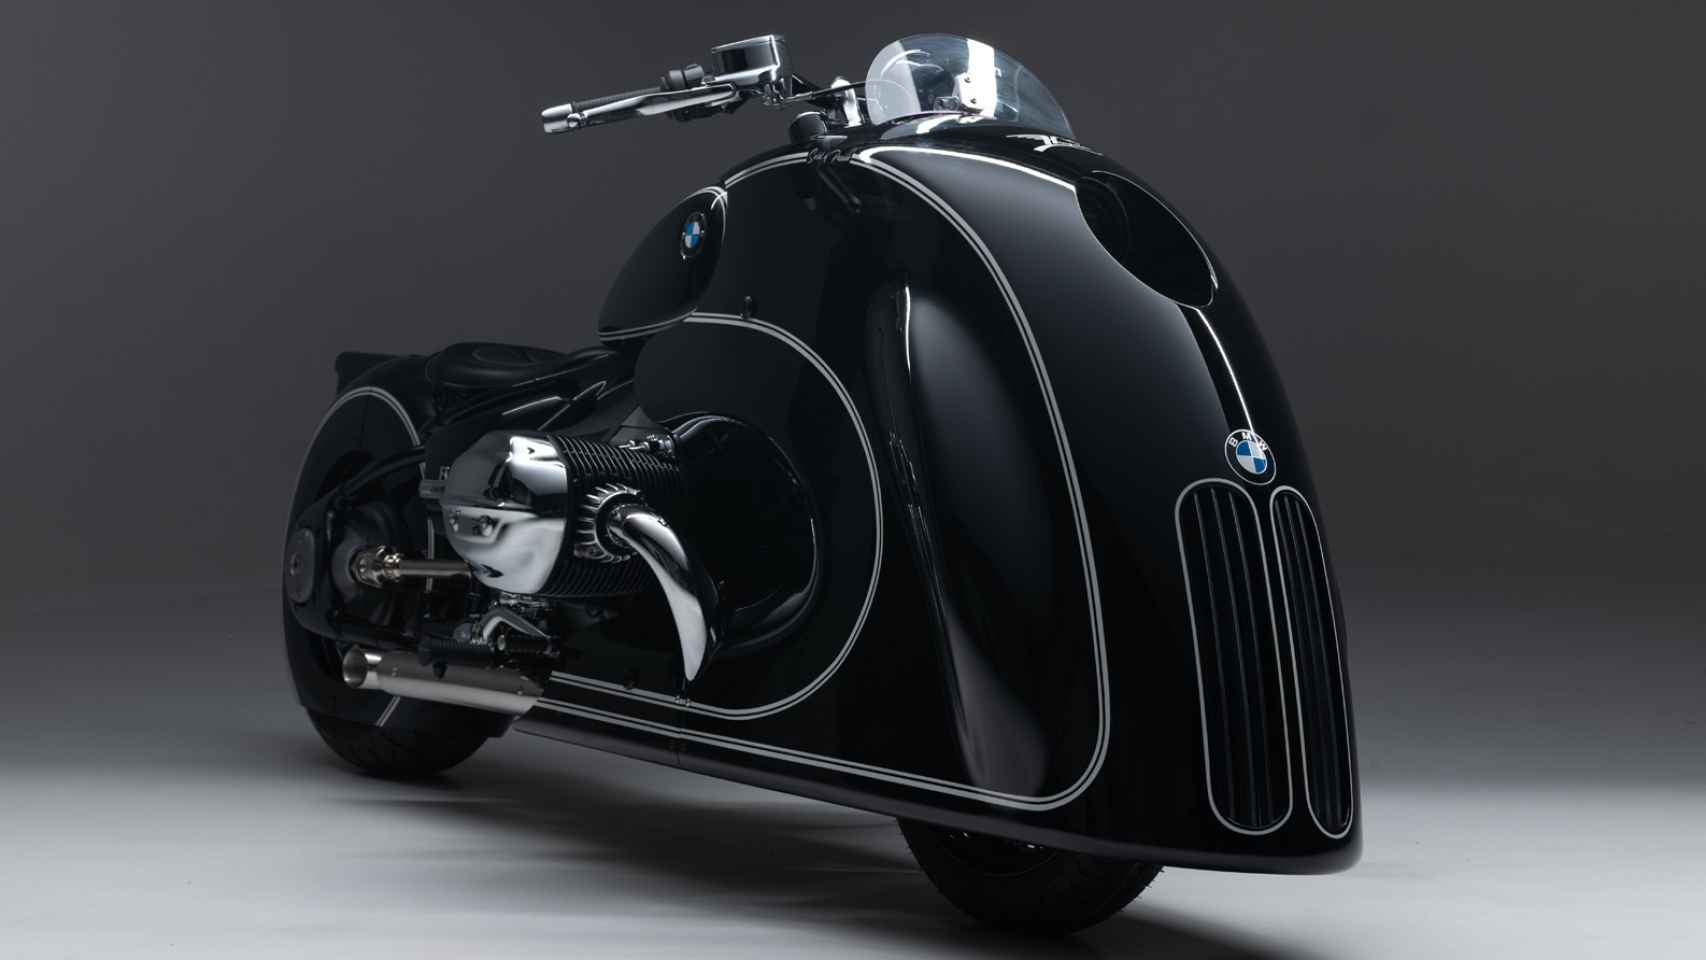 Así es la BMW R 18 Custom Bike, una moto con una personalización muy llamativa.